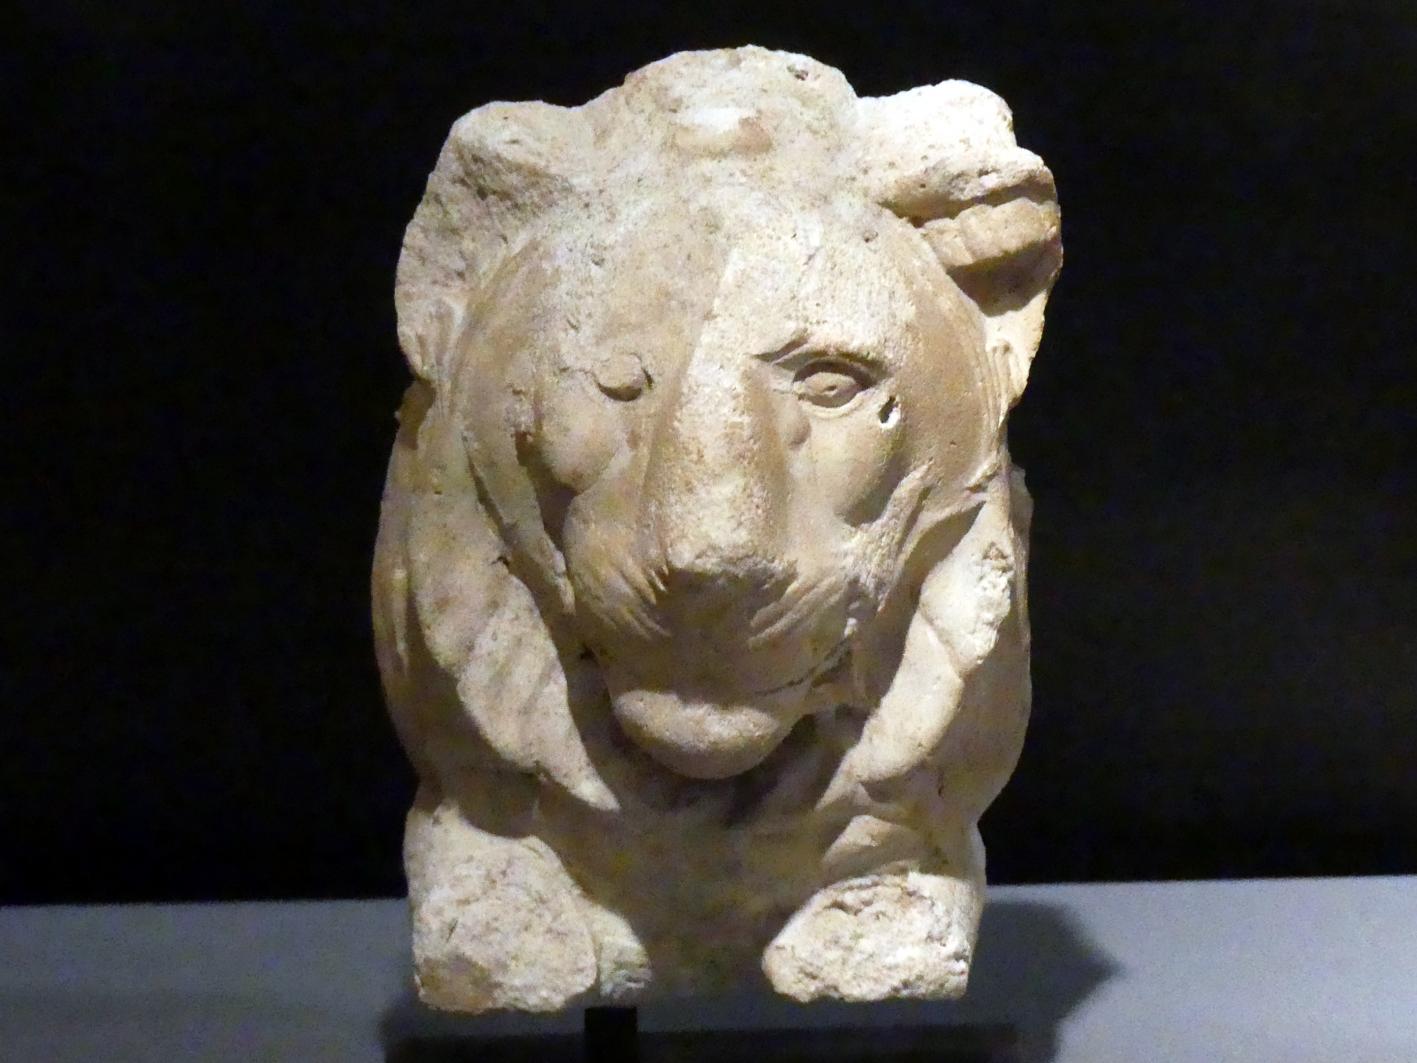 Antiker Abguss einer Bildhauervorlage für einen Löwenkopf, Ptolemäische Zeit, 400 v. Chr. - 1 n. Chr., 400 - 200 v. Chr., Bild 1/2